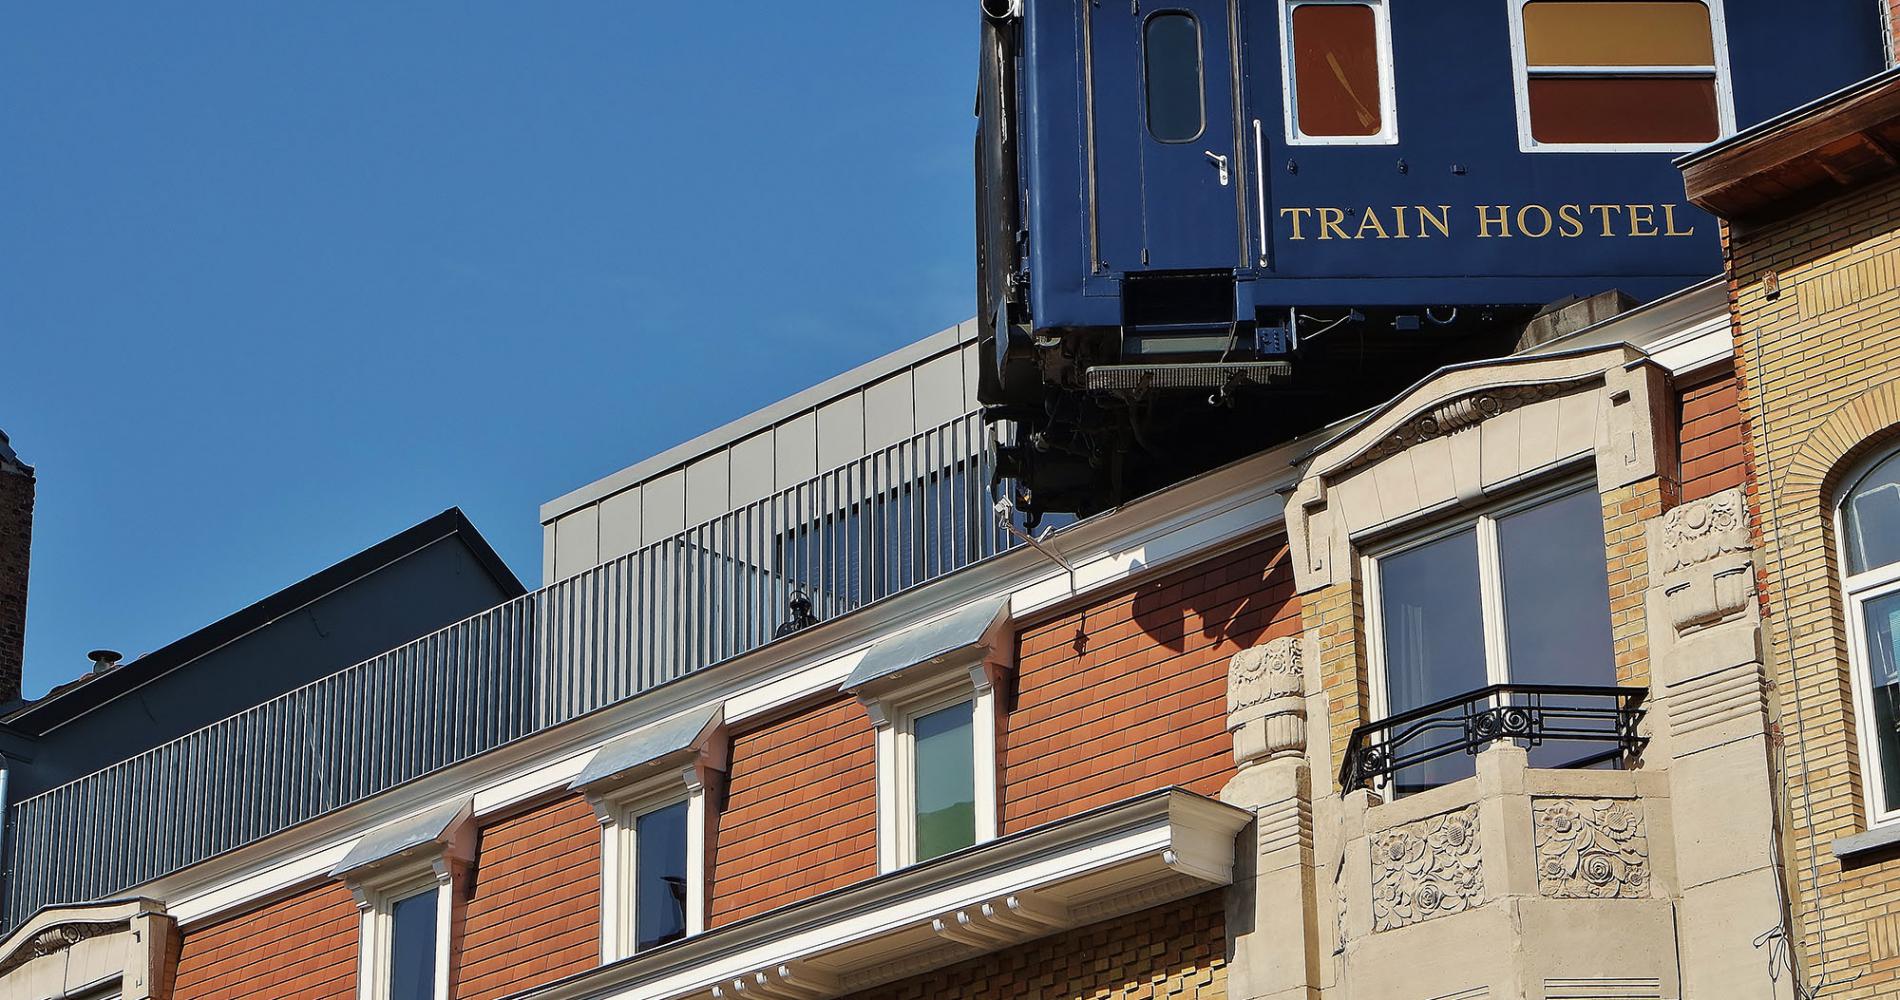 Train Hostel - Endroit insolite à Schaerbeek, en Belgique